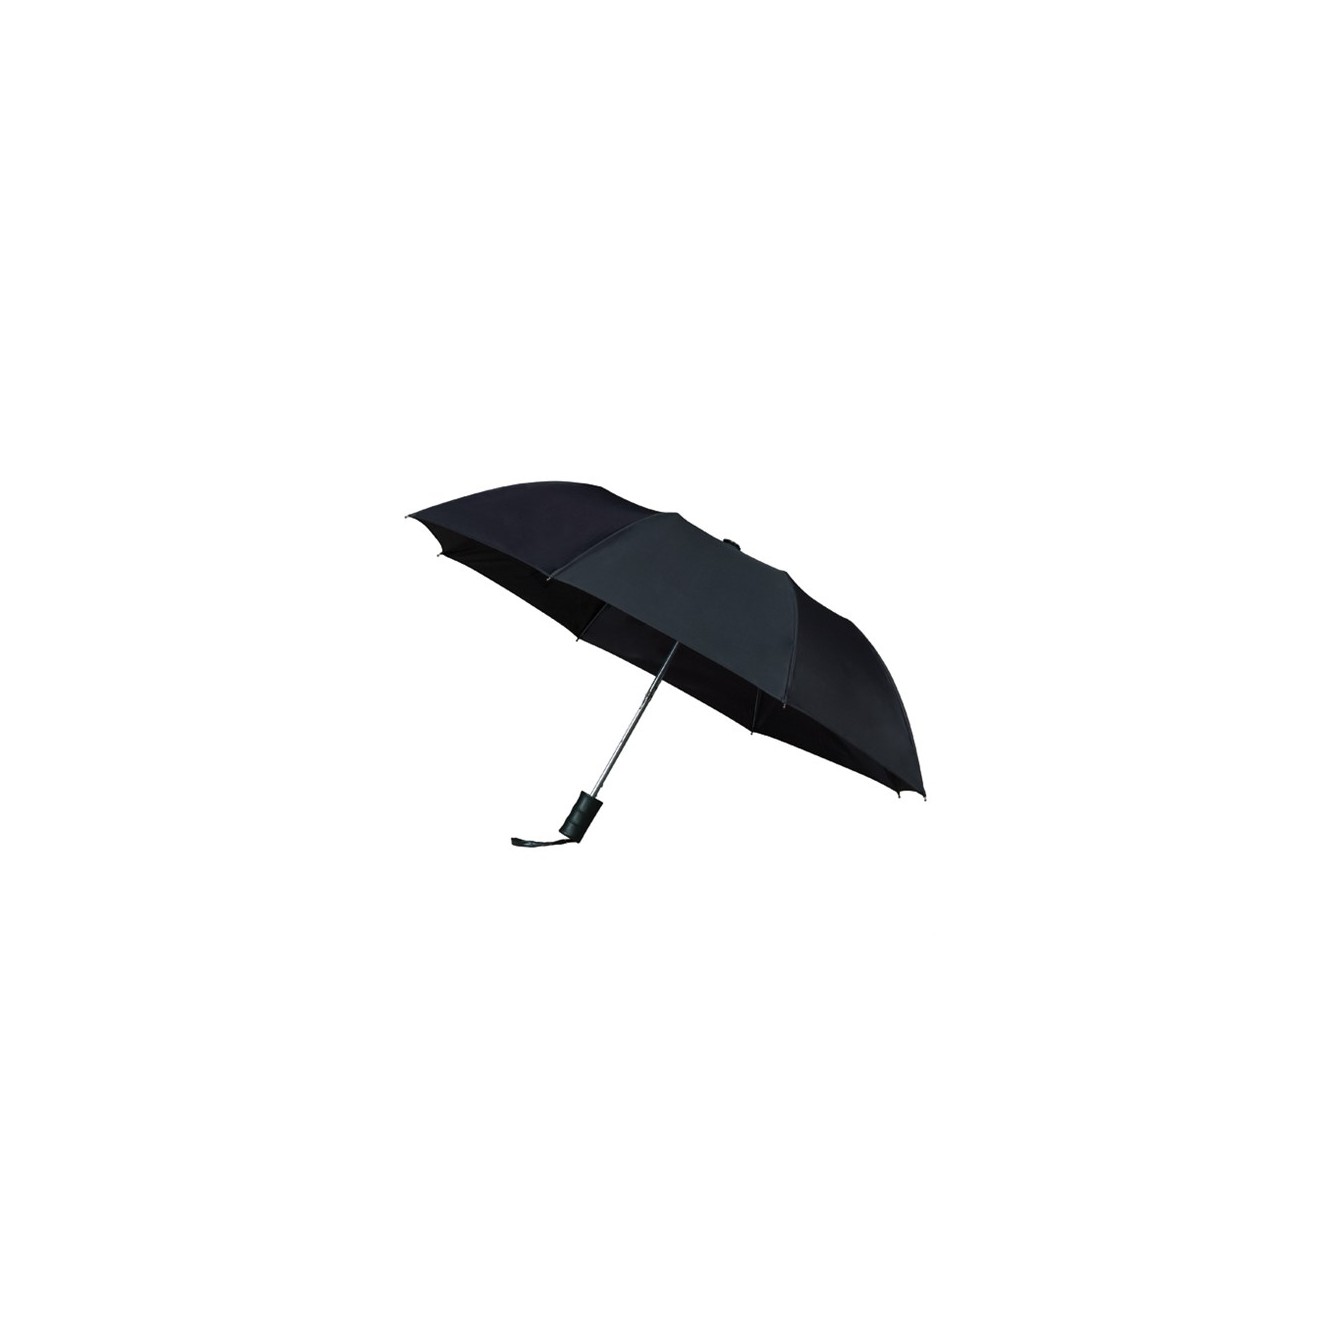 Opvouwbare paraplu